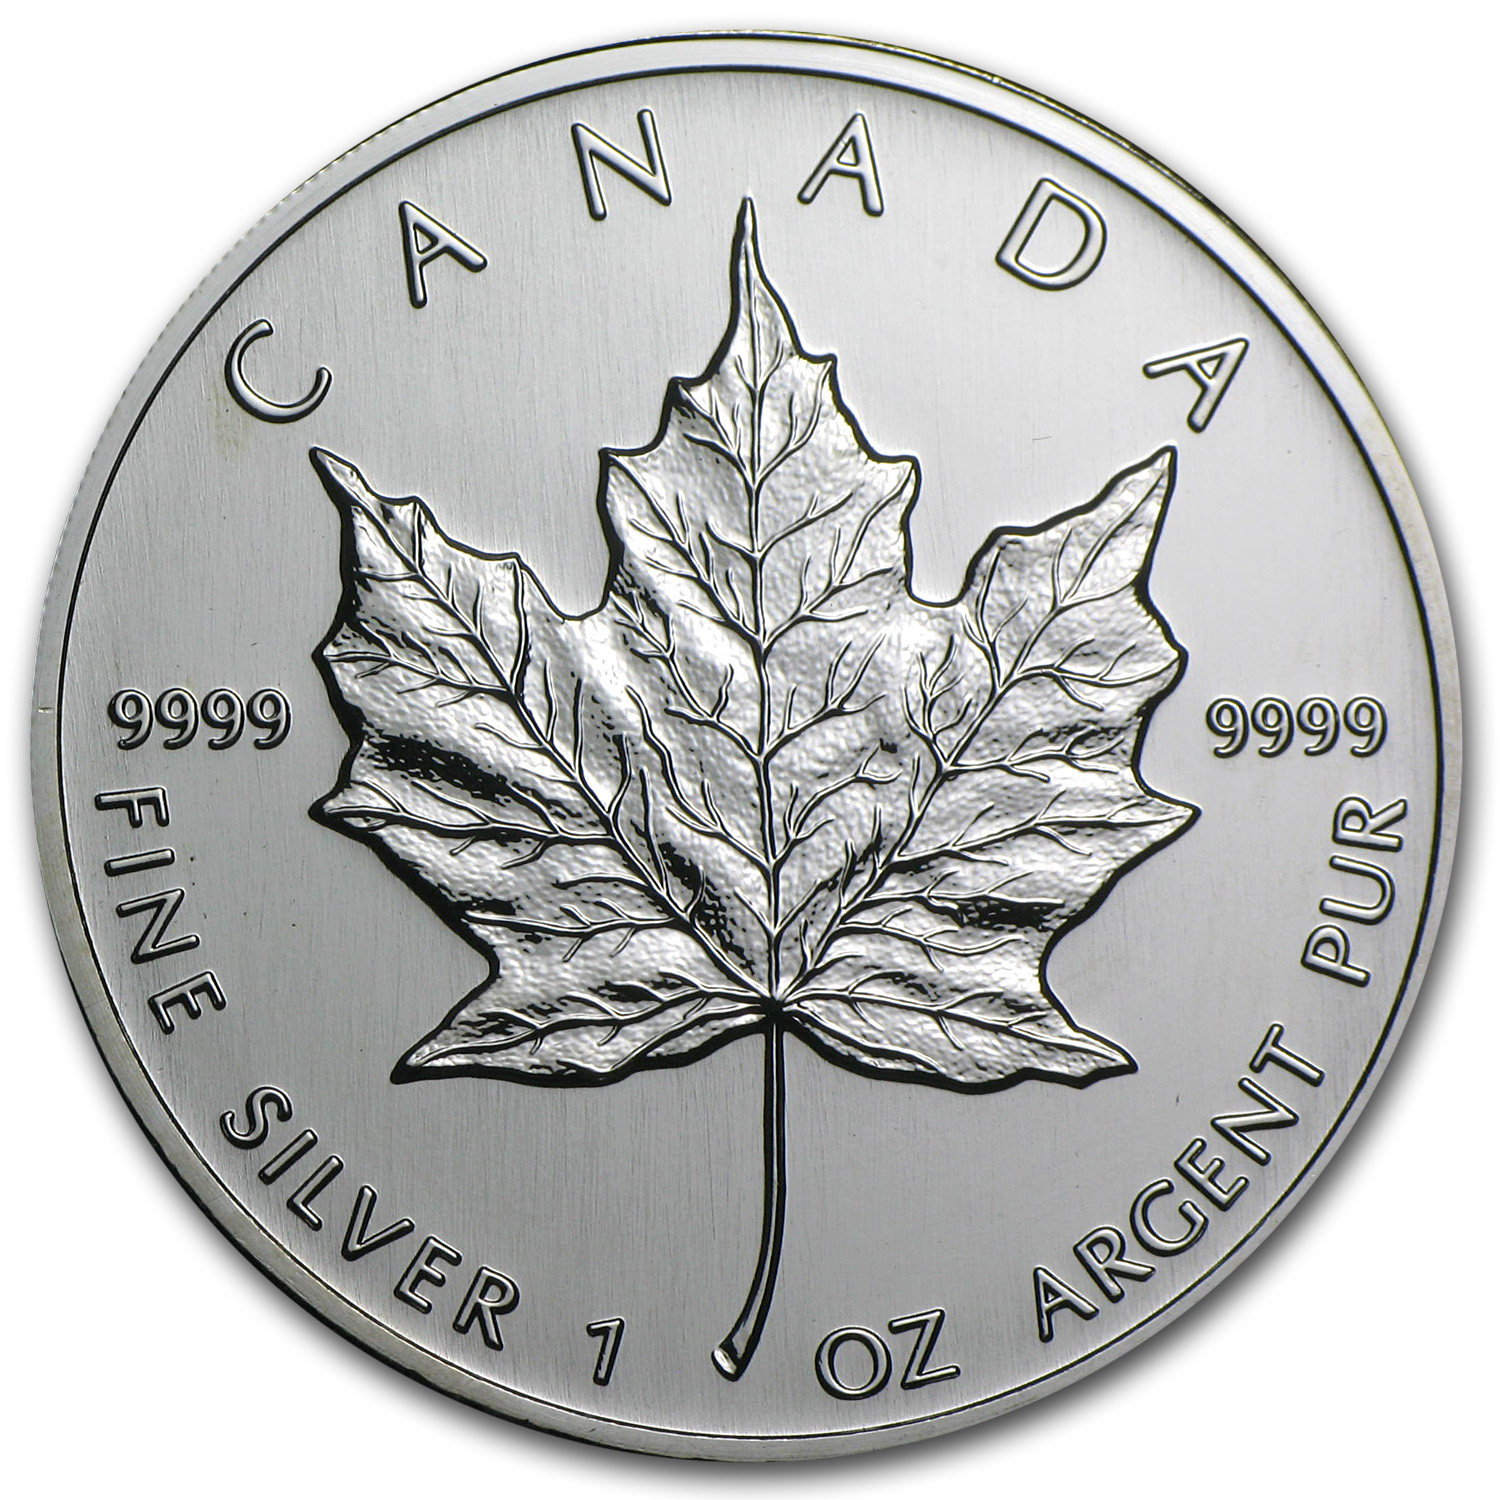 Buy 2002 Canada 1 oz Silver Maple Leaf BU